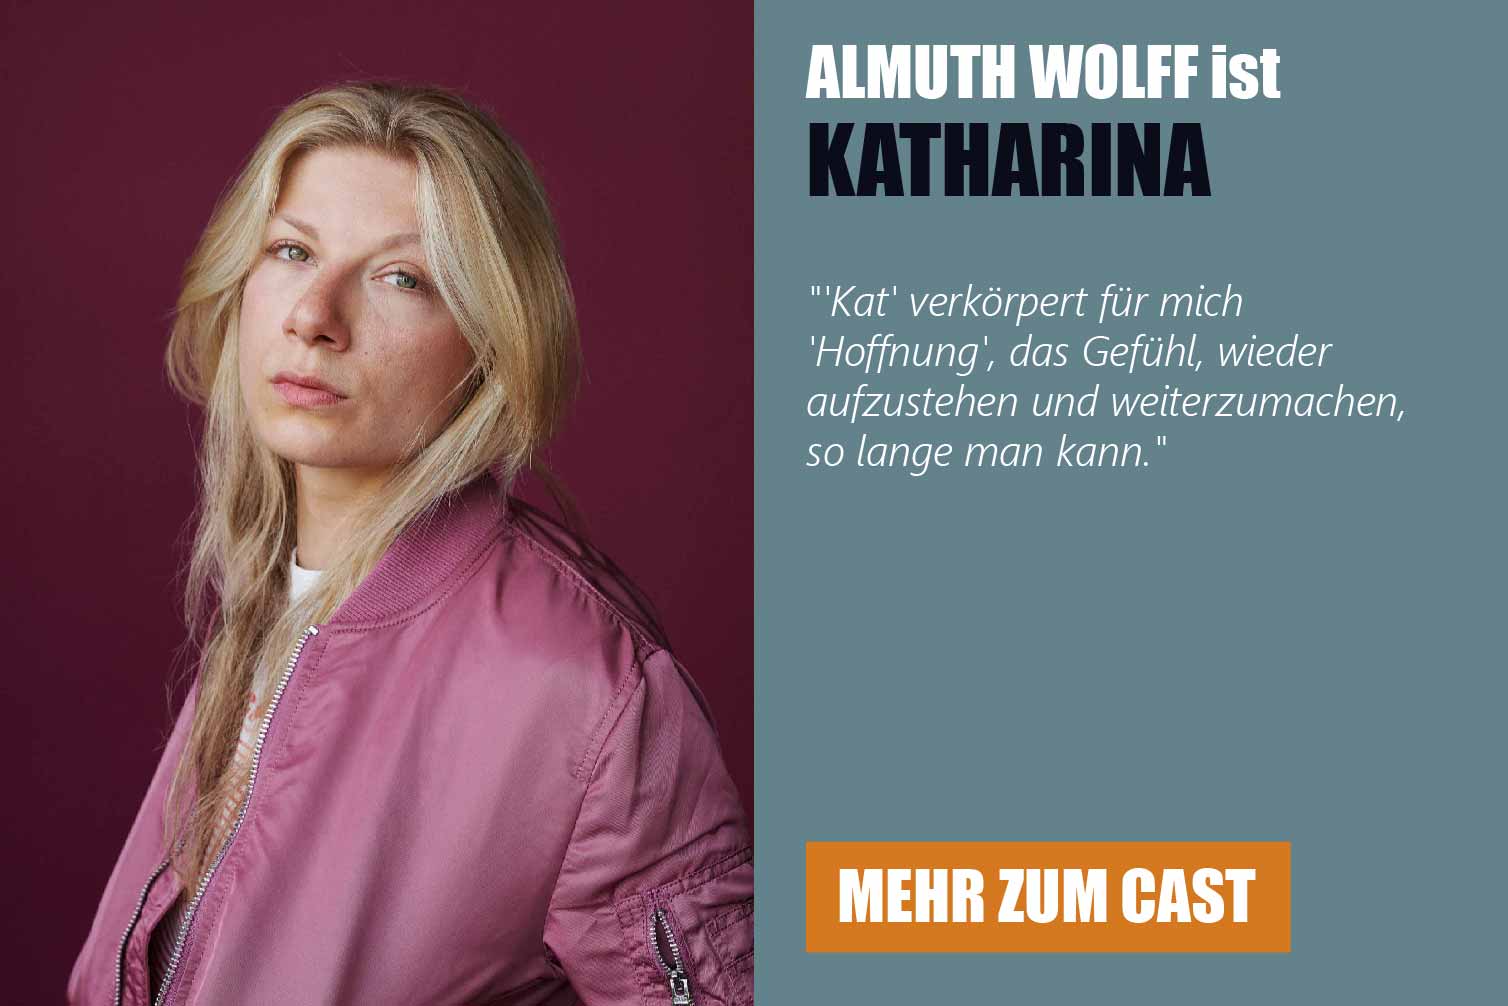 Die Schauspielerin Almuth Wolff ist Katharina